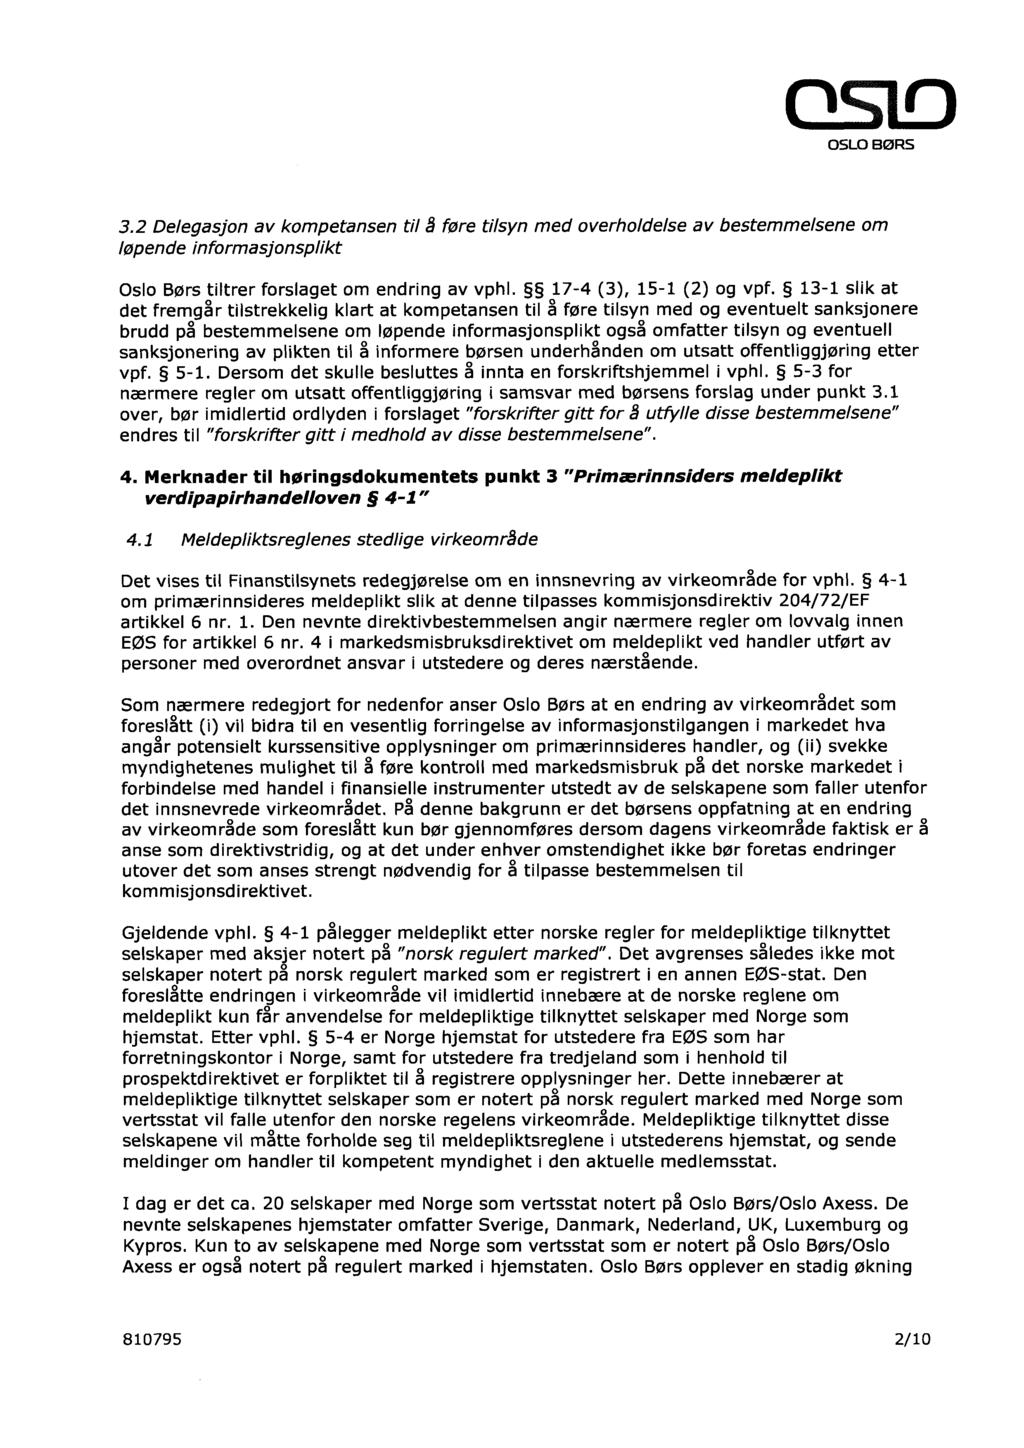 3.2 Delegasjon av kompetansen til å føre tilsyn med overholdelse av bestemmelsene om løpende informasjonsplikt Oslo Børs tiltrer forslaget om endring av vphl. 17-4 (3), 15-1 (2) og vpf.